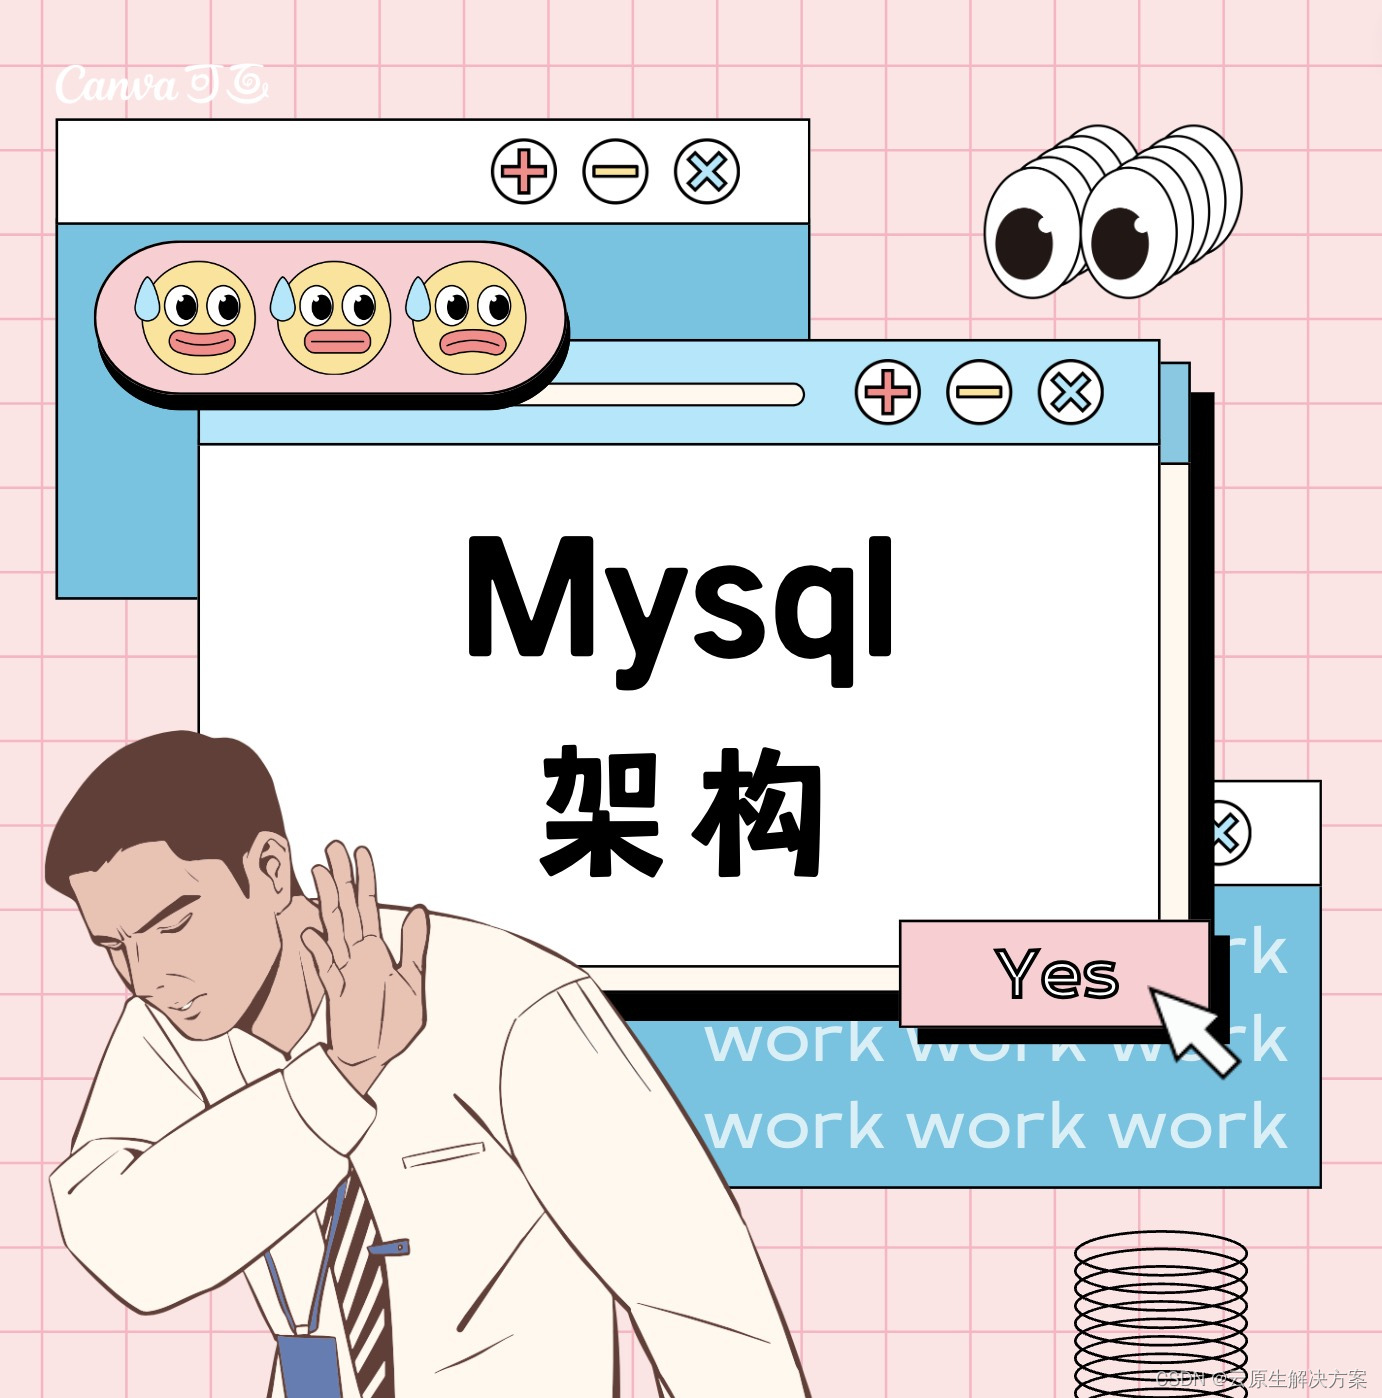 你知道Mysql的架构吗？